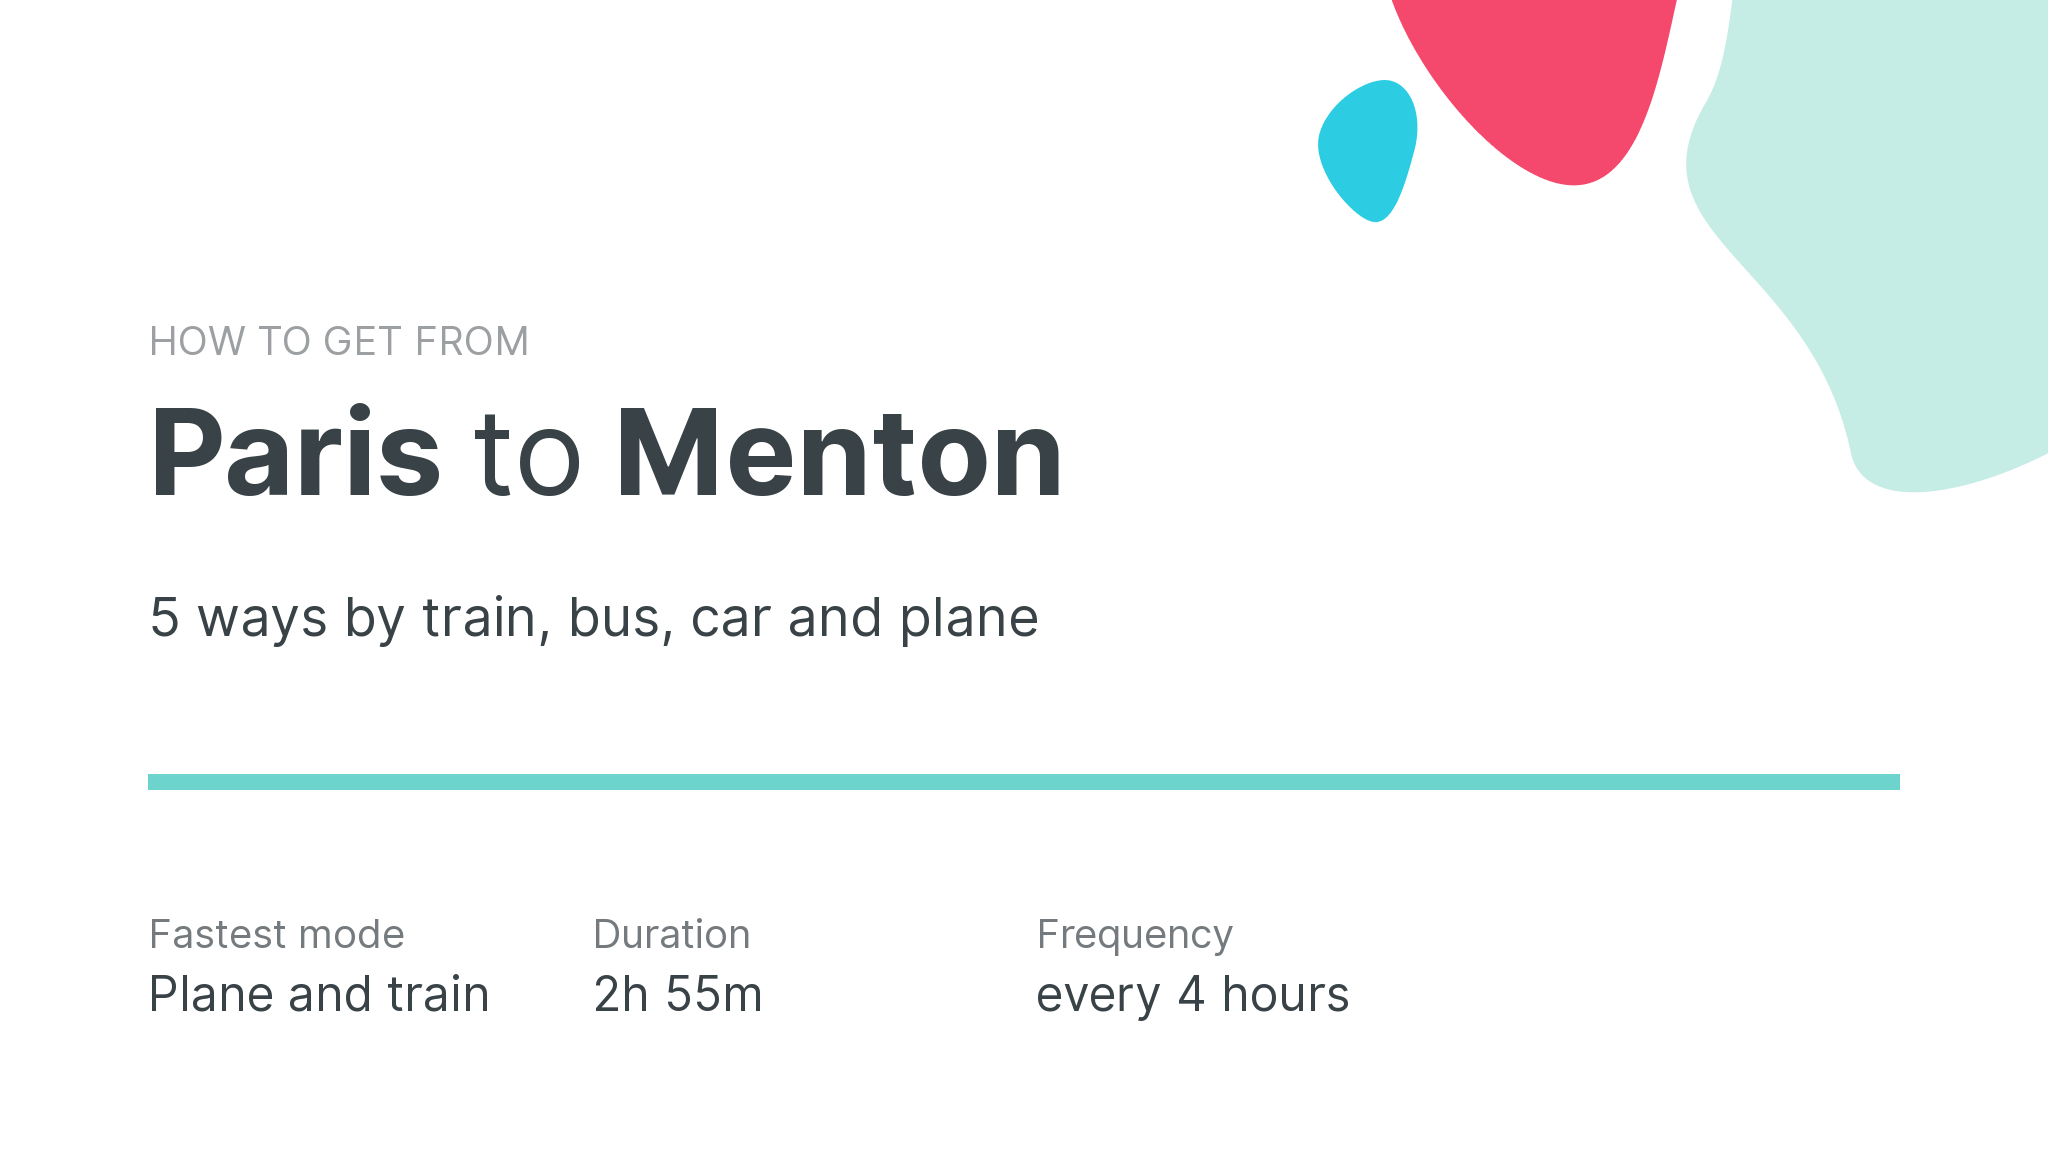 How do I get from Paris to Menton